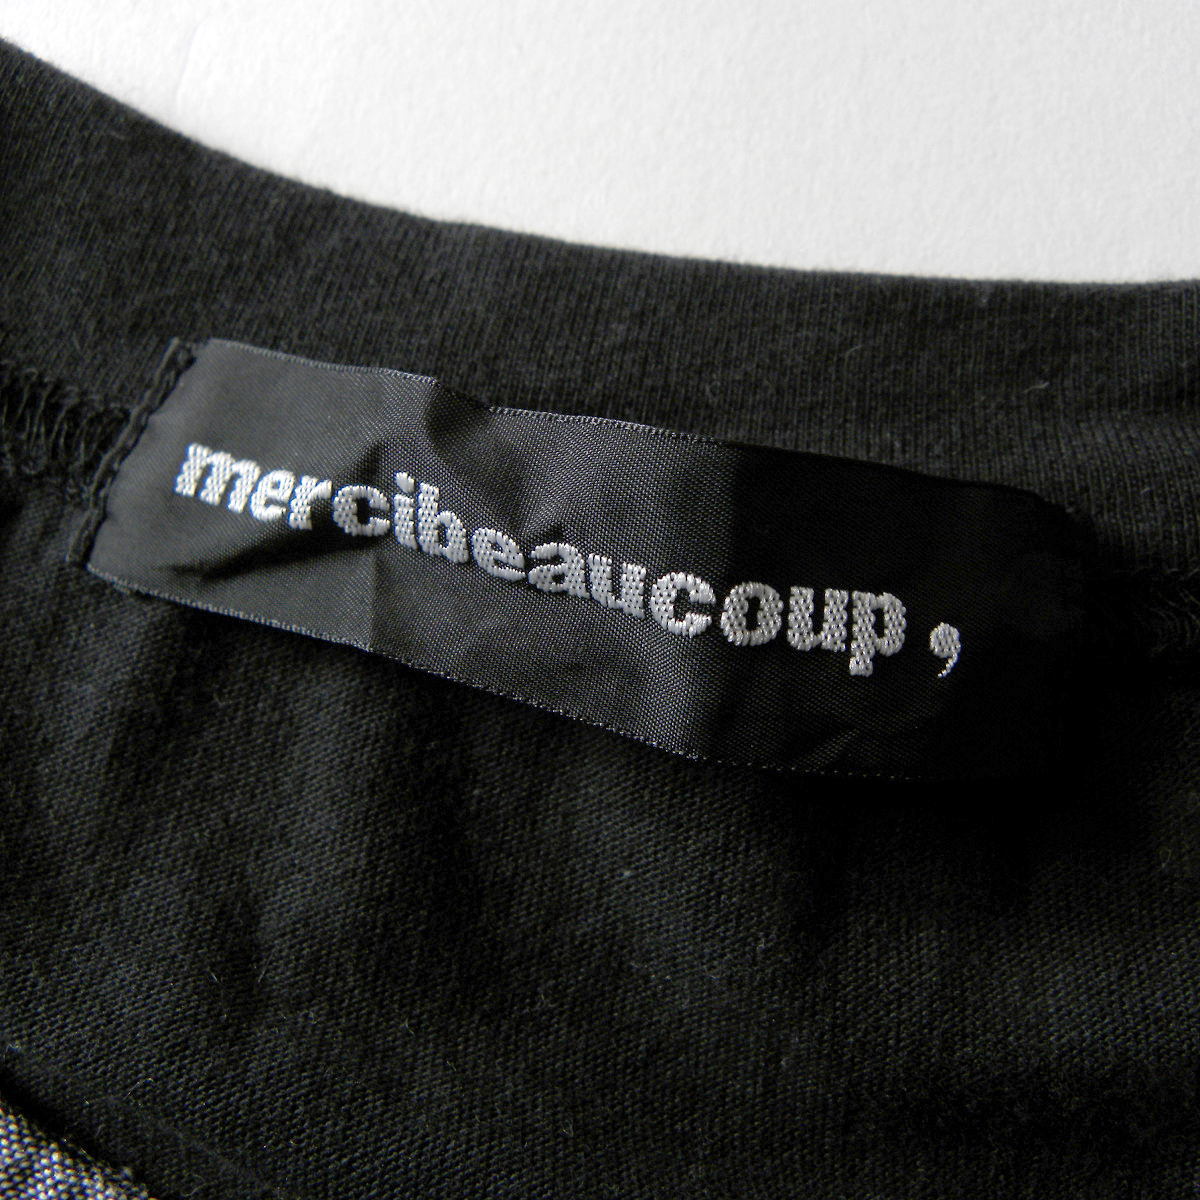 メルシーボークー mercibeaucoup, 異素材切替タックネックTシャツ プルオーバー ゆったりシルエット カジュアル 手洗い可 l0425-5の画像4